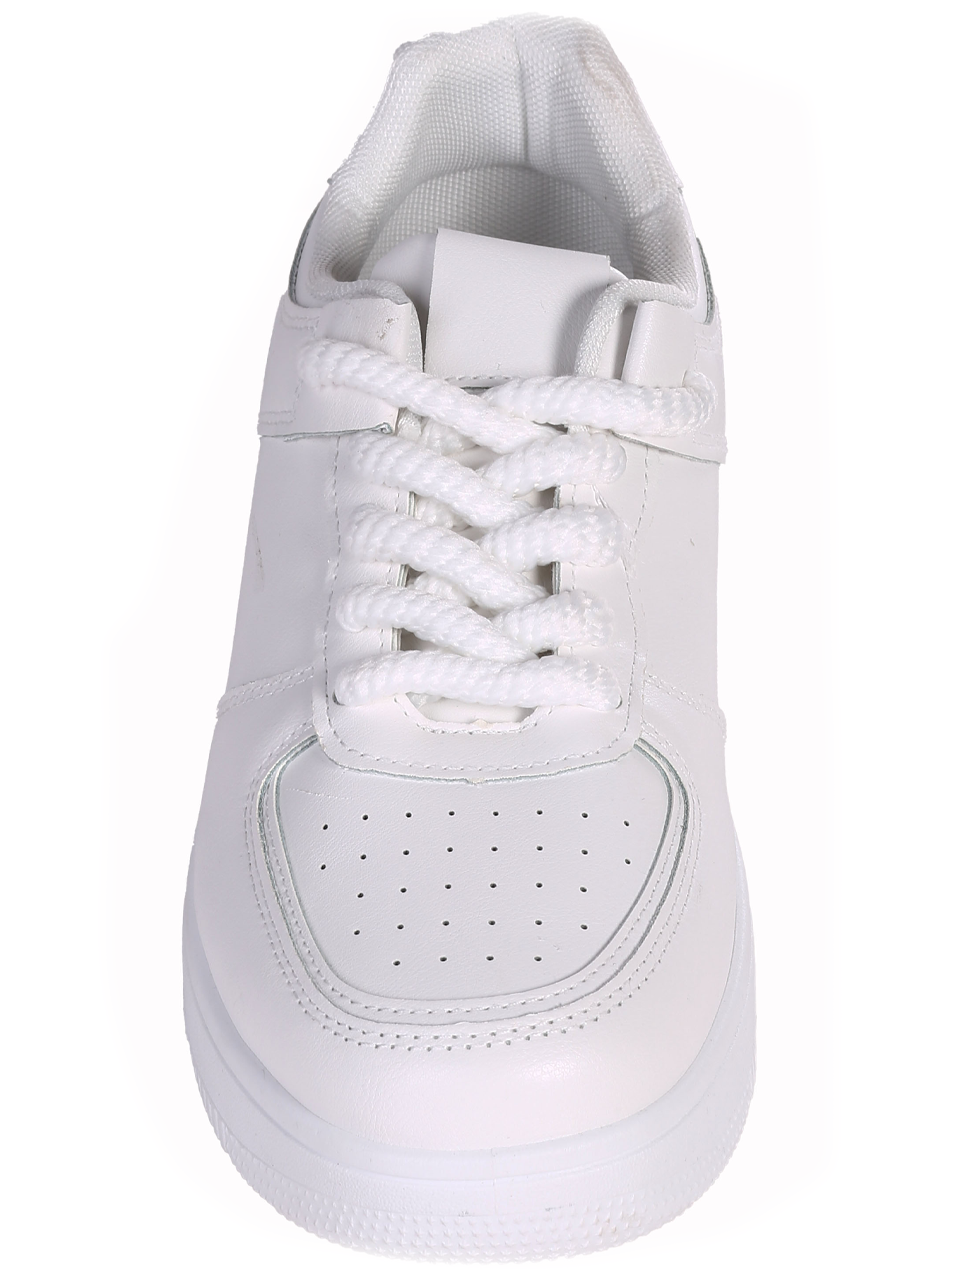 Eжедневни мъжки обувки в бяло 7U-24116 white